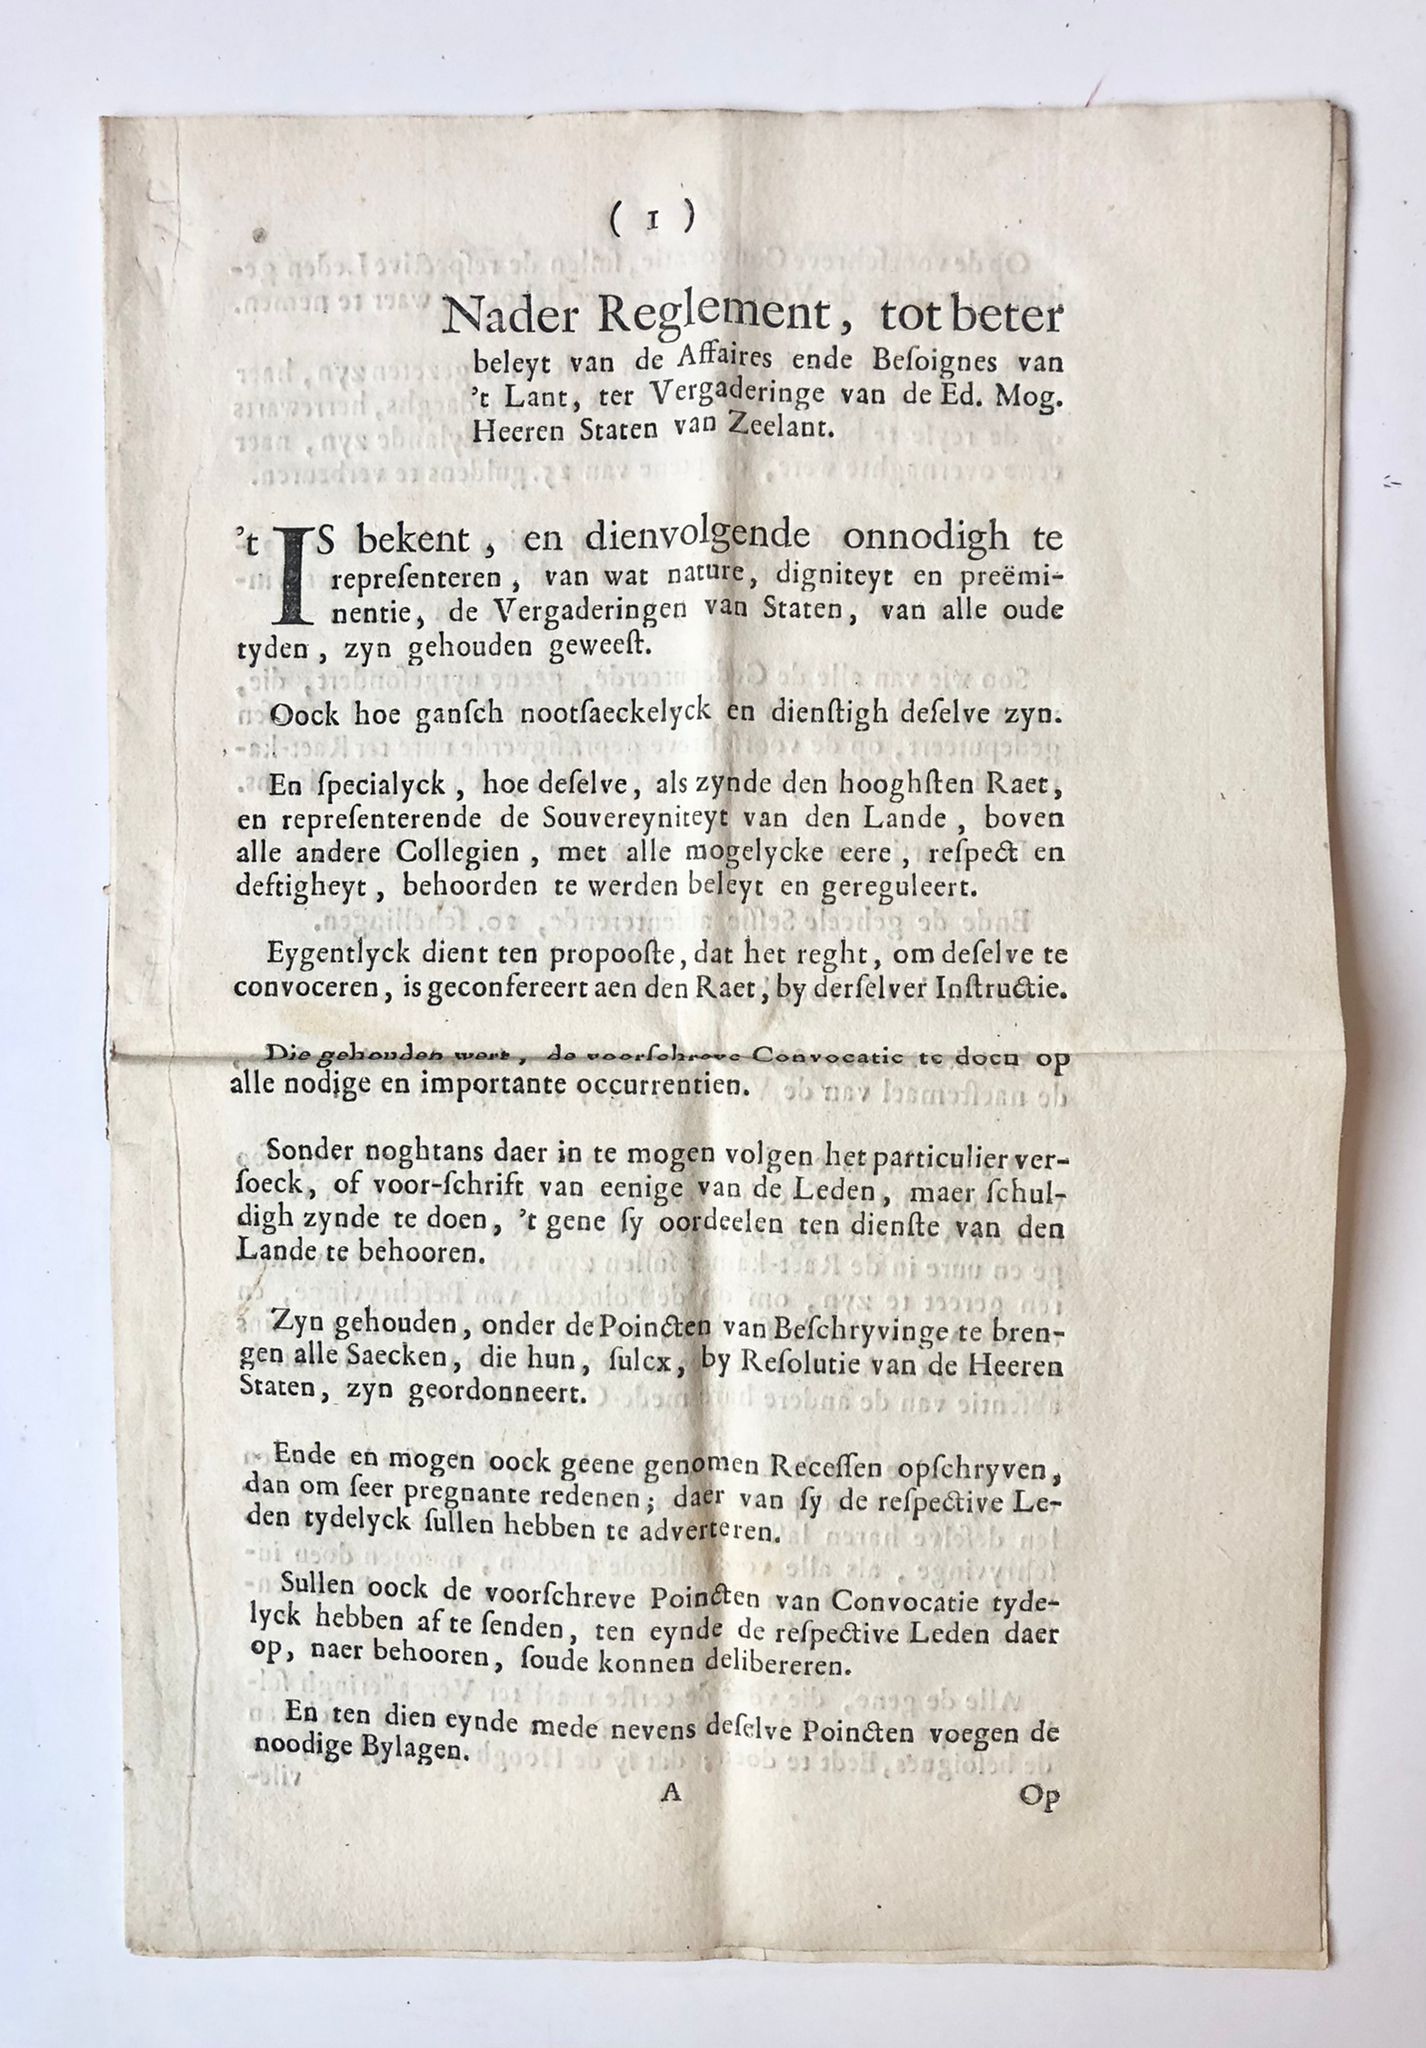 [Zeeland, Rare, [1702]] [1] Nader Reglement, tot beter beleyt van de Affaires ende Besoignes van ’t Lant, ter Vergaderinge van de Ed. Mog. Heeren Staten van Zeelant, [1702], 7 pp.